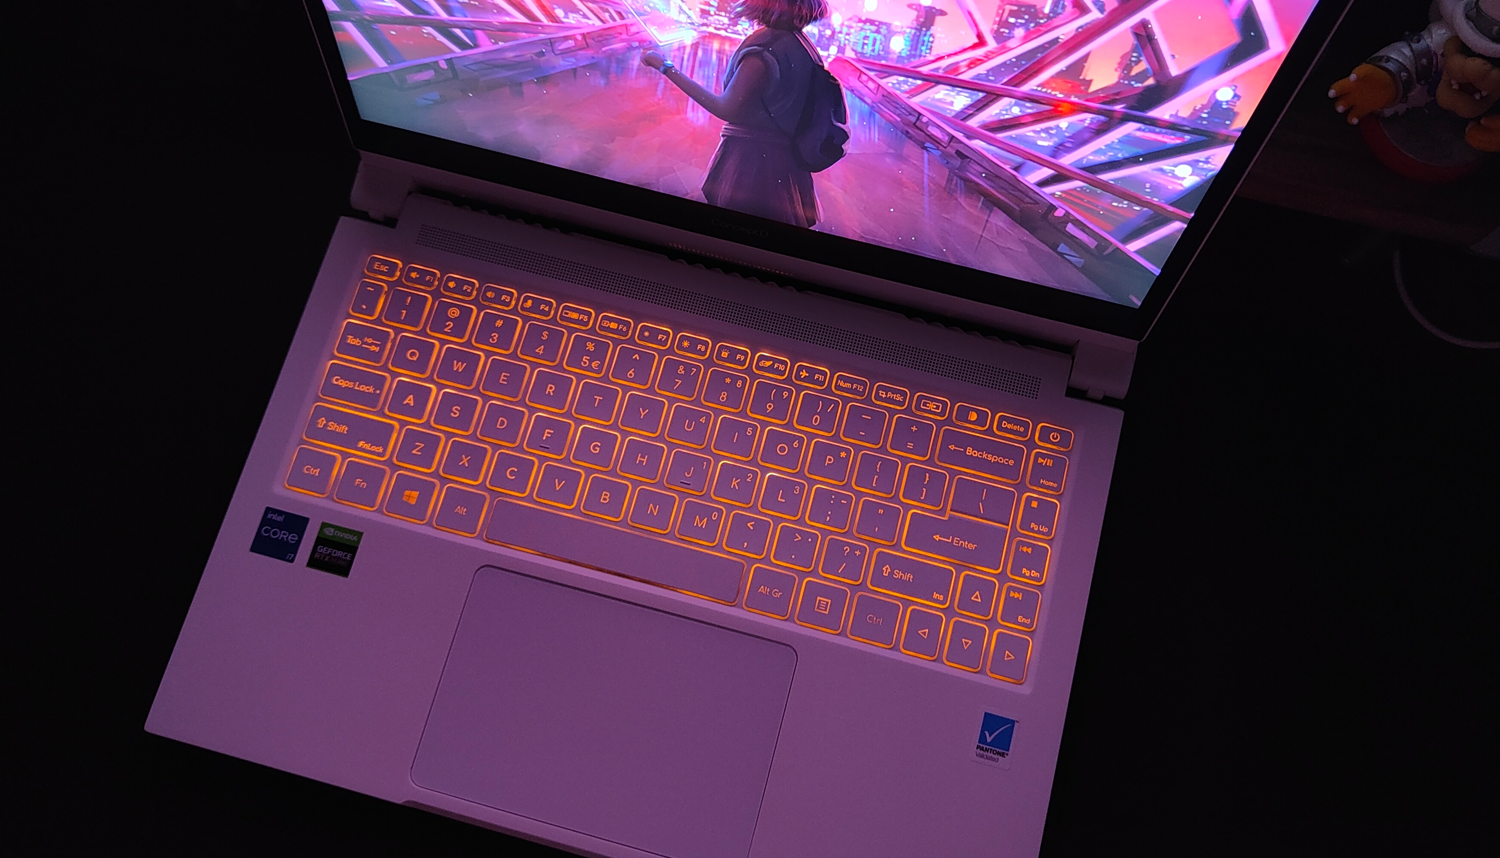 宏碁|设计师专用本中的颜值天花板：宏碁ConceptD 3 Ezel翻转笔记本